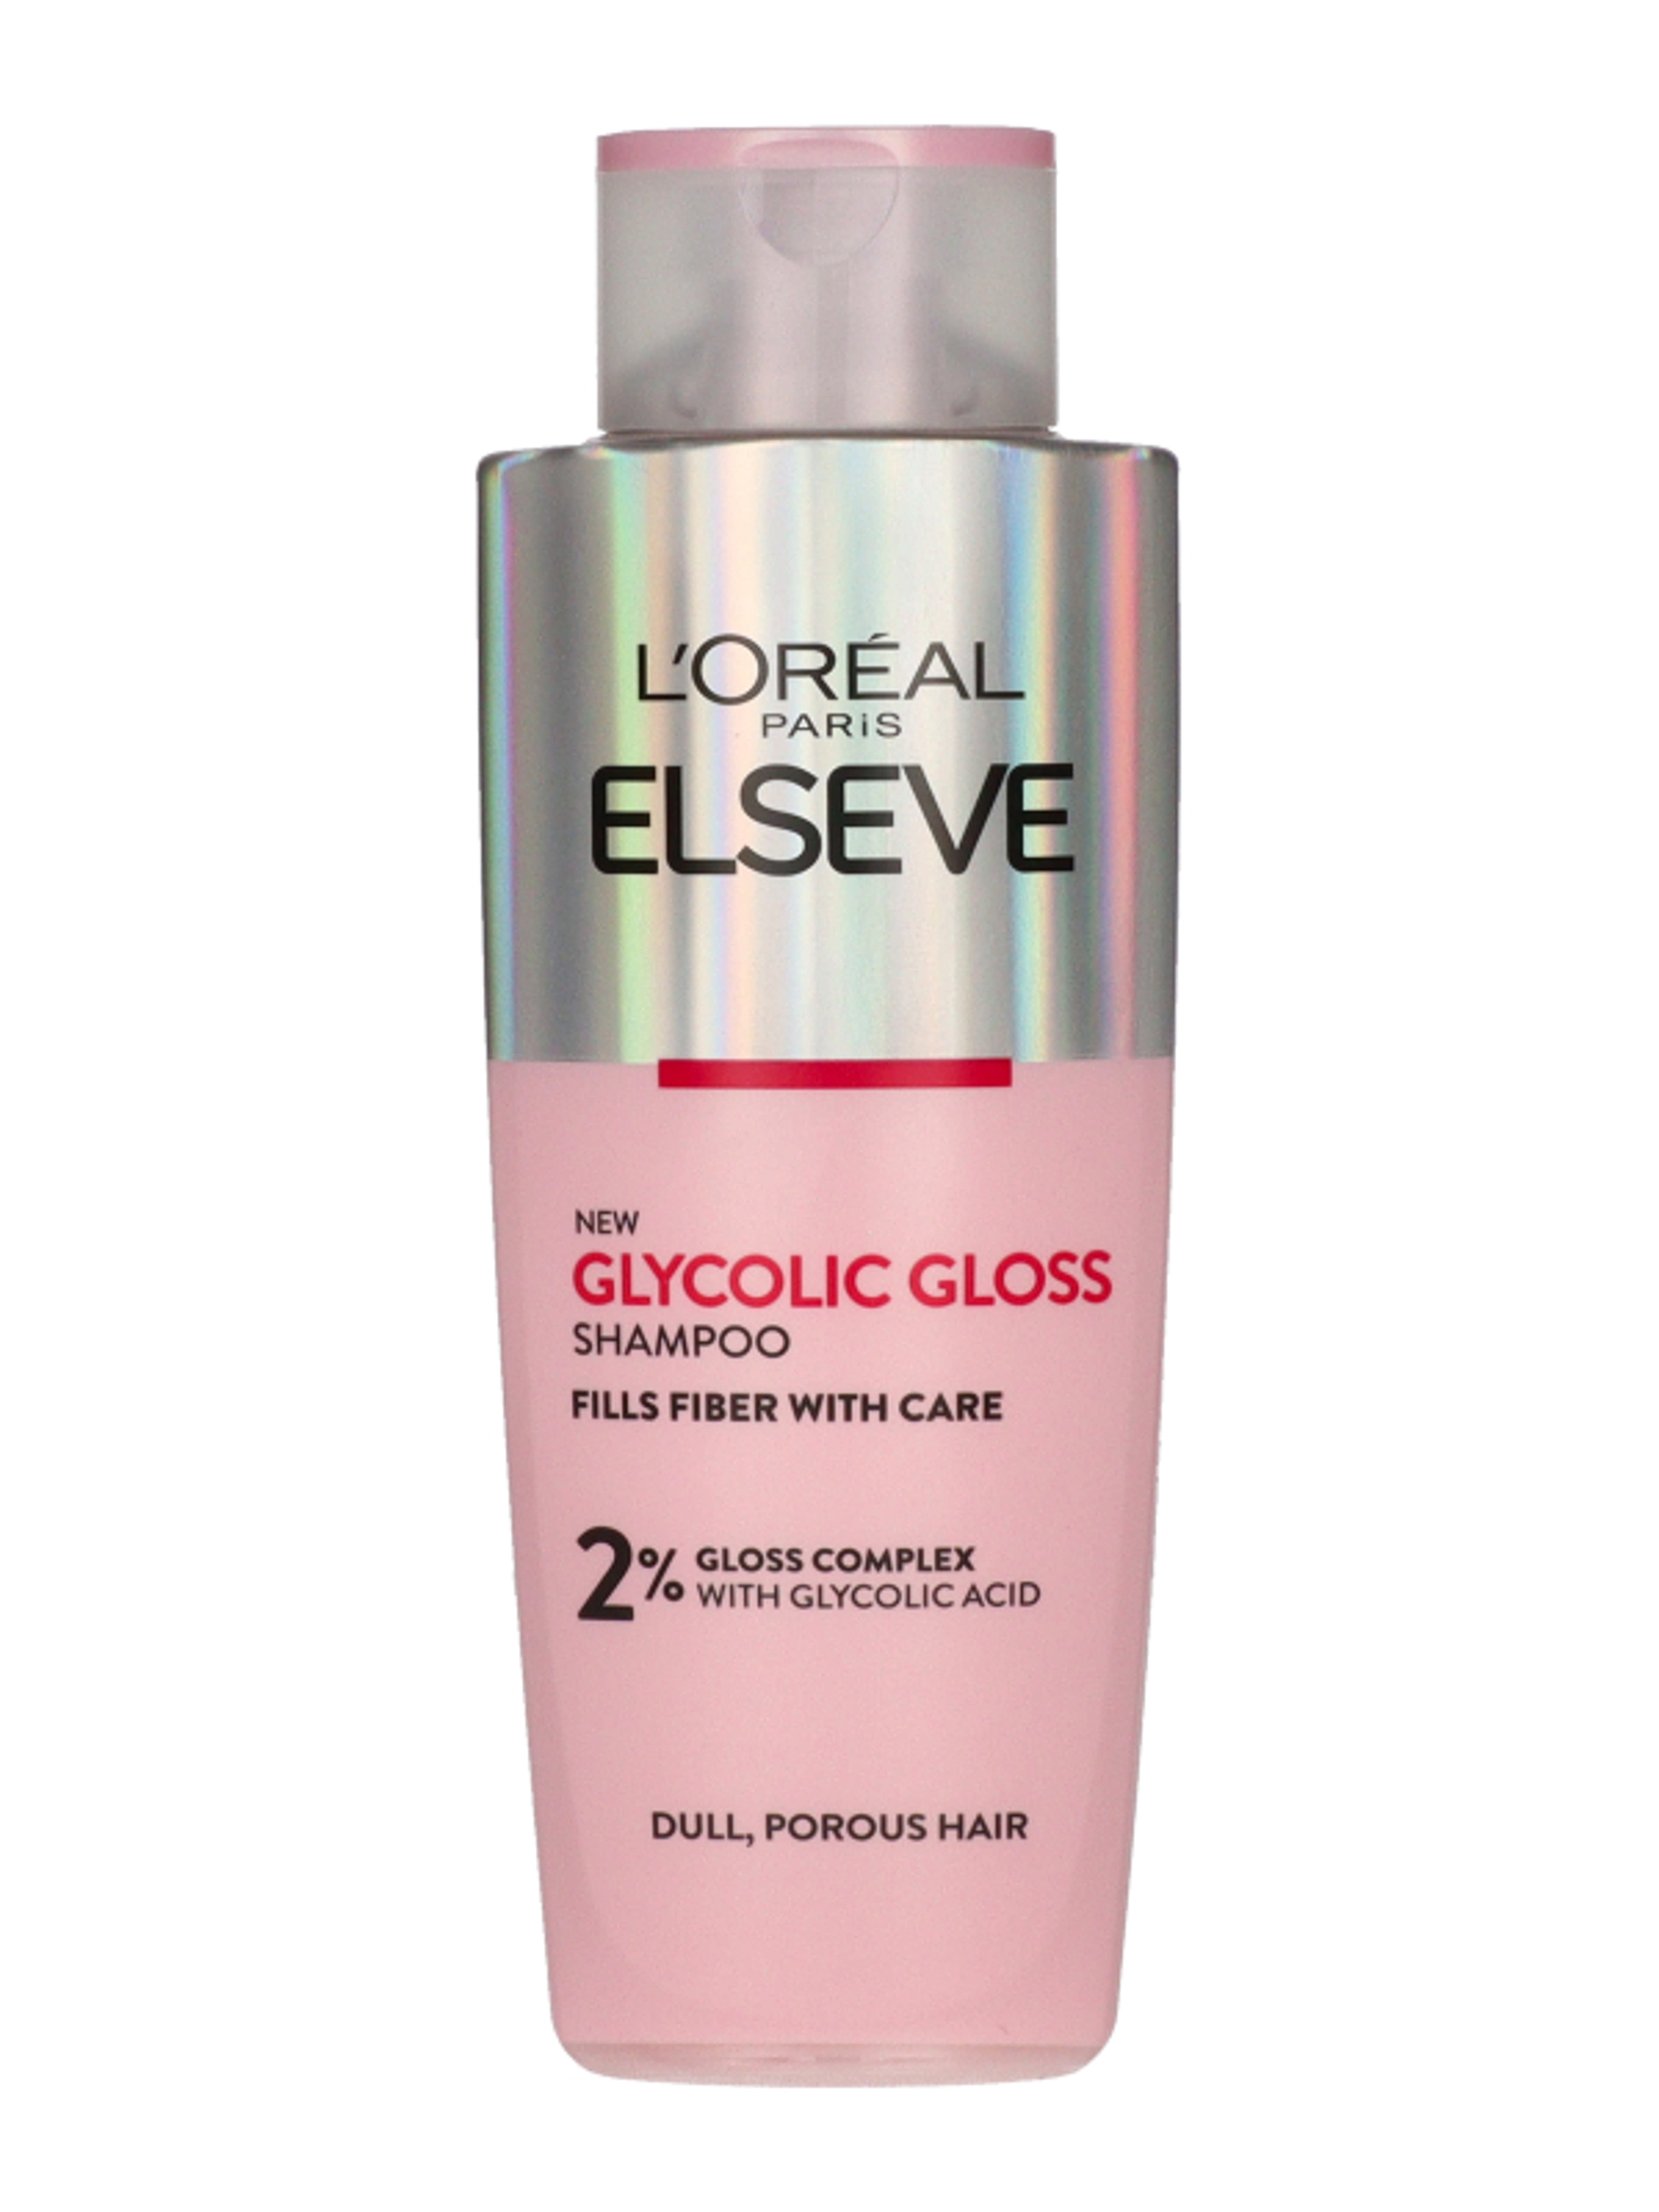 L'Oréal Paris Elseve Glycolic Gloss sampon - 200 ml